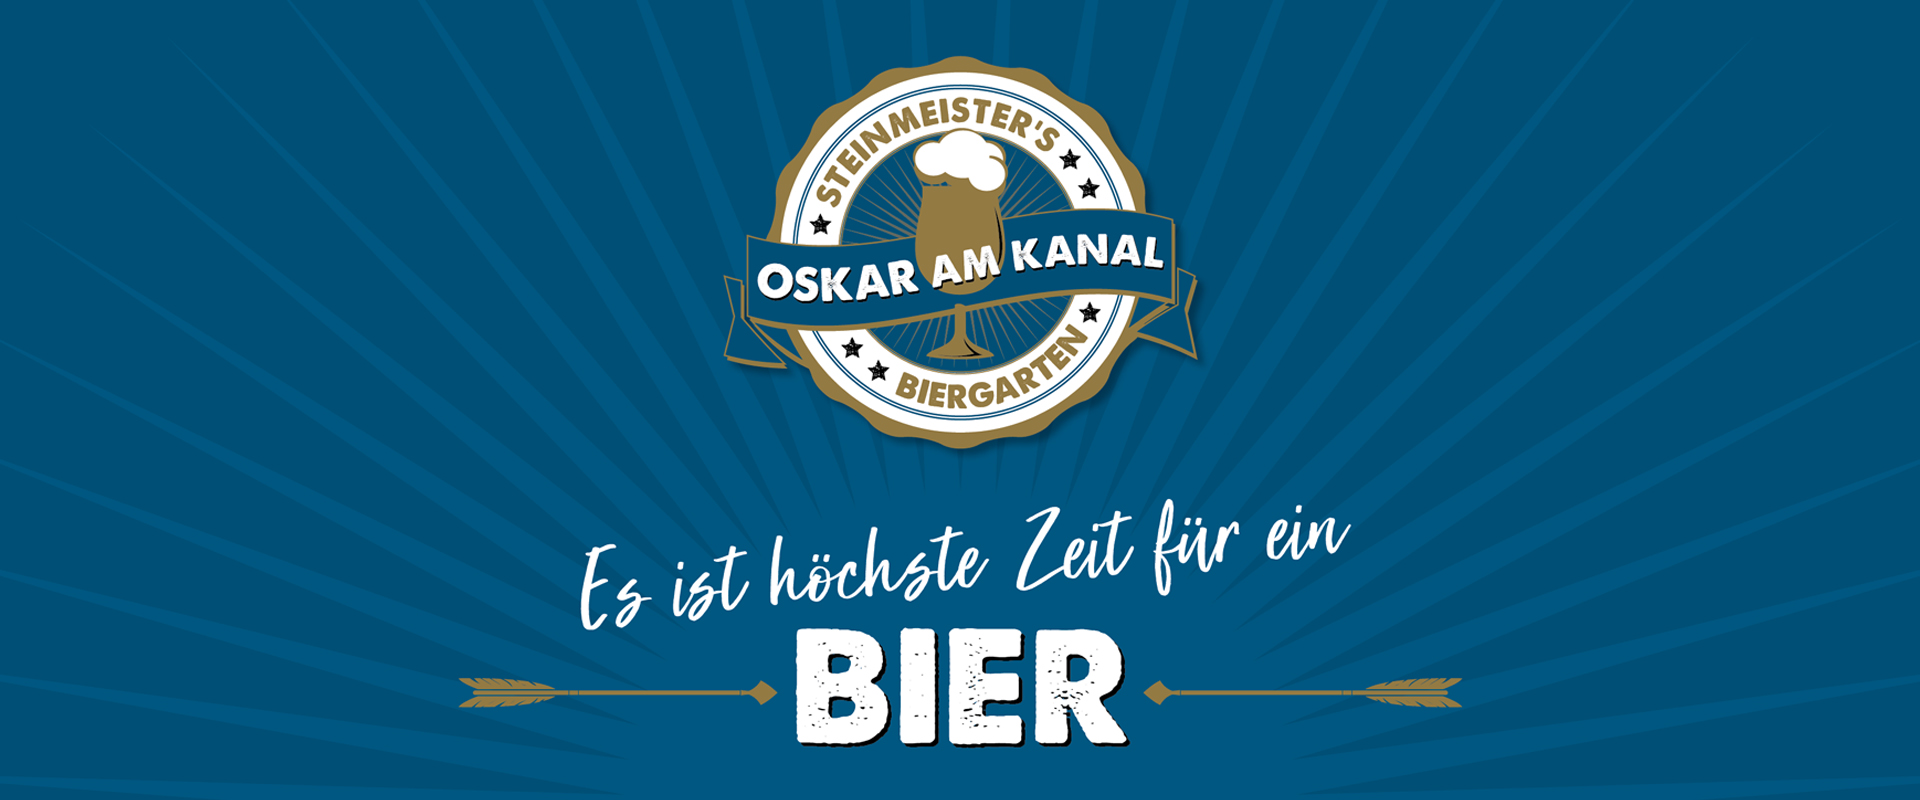 (c) Oskaramkanal.de